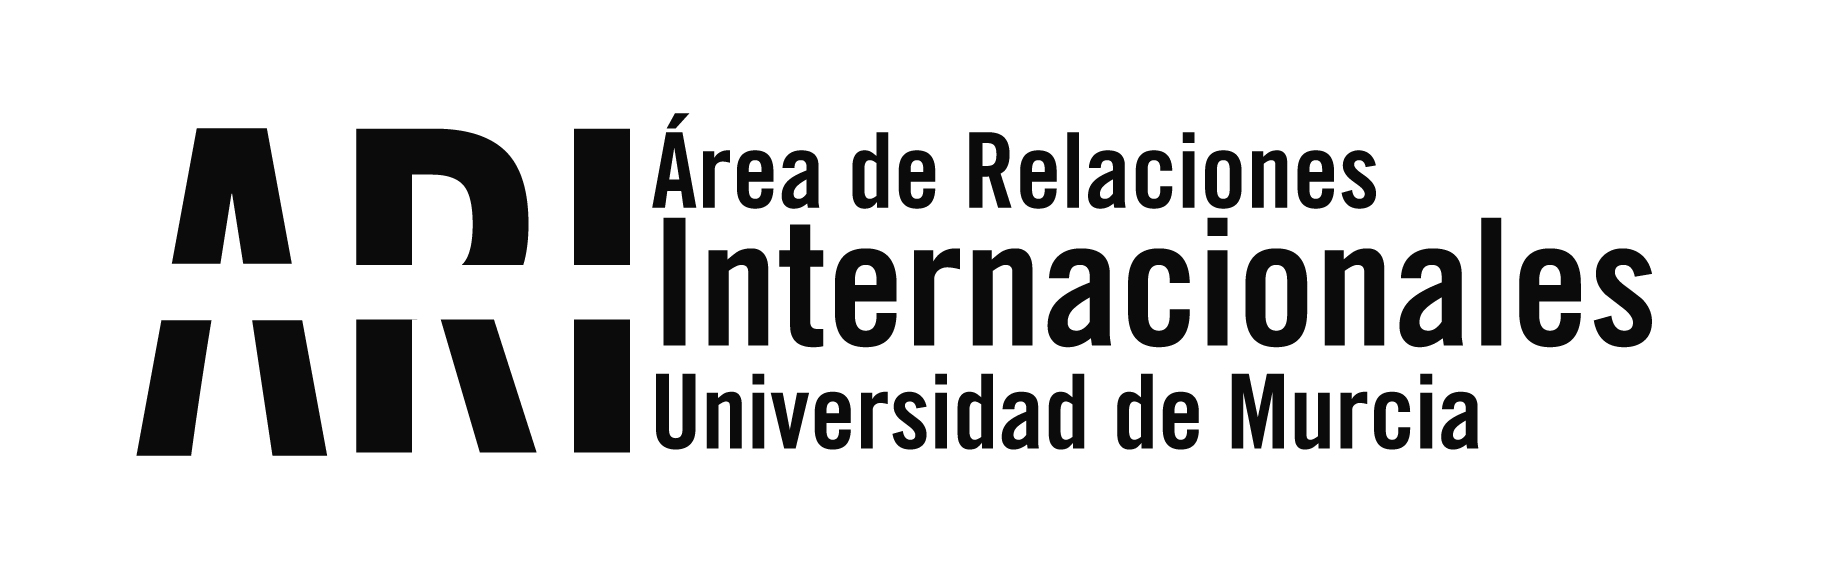 Servicio de Idiomas de la Universidad de Murcia, nuevo miembro asociado de ALTE - Área de Relaciones Internacionales